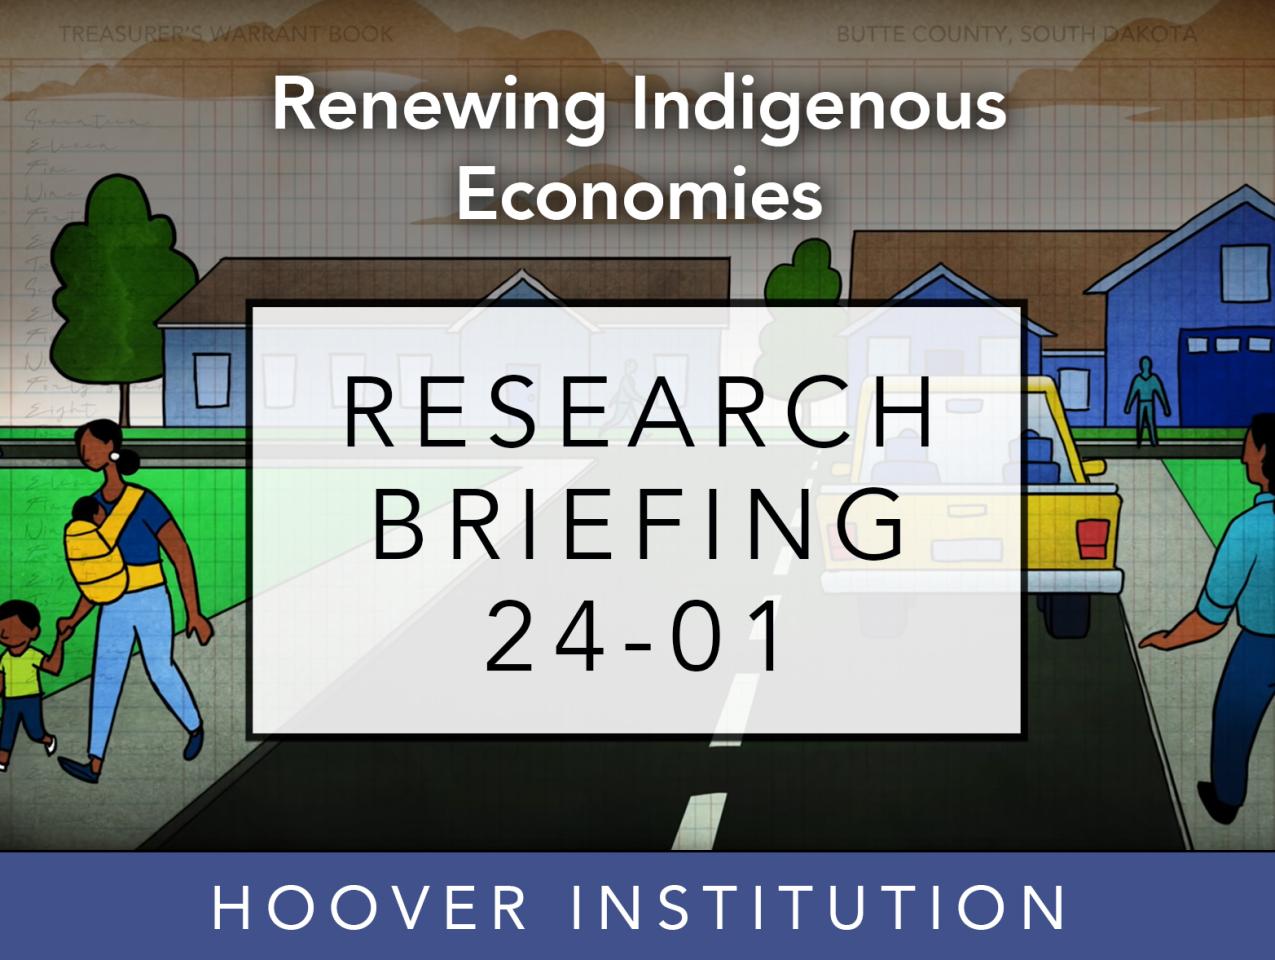 Renewing-Indigenous-Economies_ResearchBrief_7.jpg